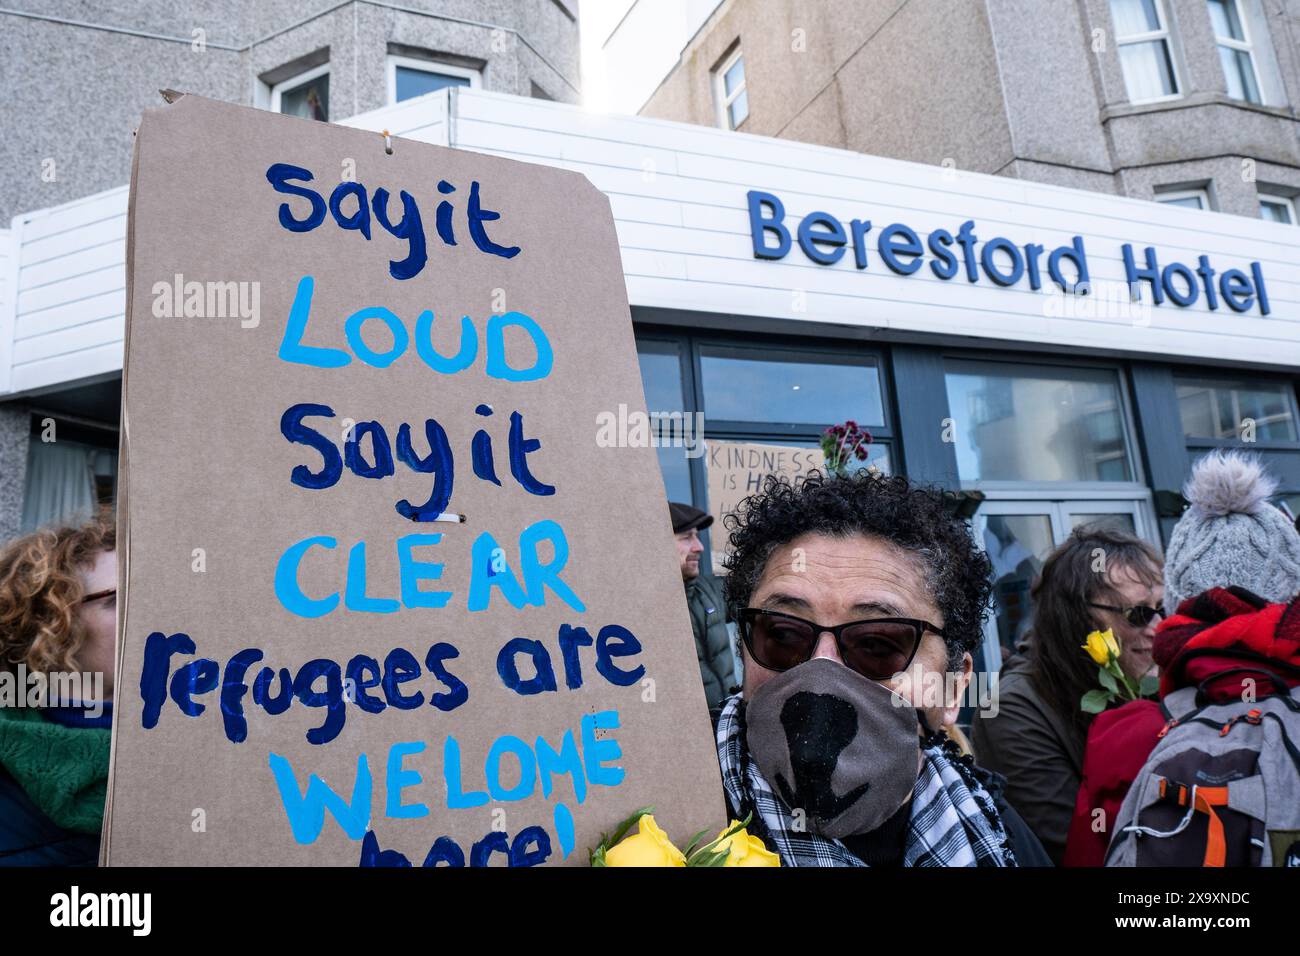 Una controdimostrazione organizzata da gruppi antifascisti contro una protesta del gruppo di destra Reform UK contro i richiedenti asilo collocata al Beresford Hotel di Newquay in Cornovaglia. Foto Stock